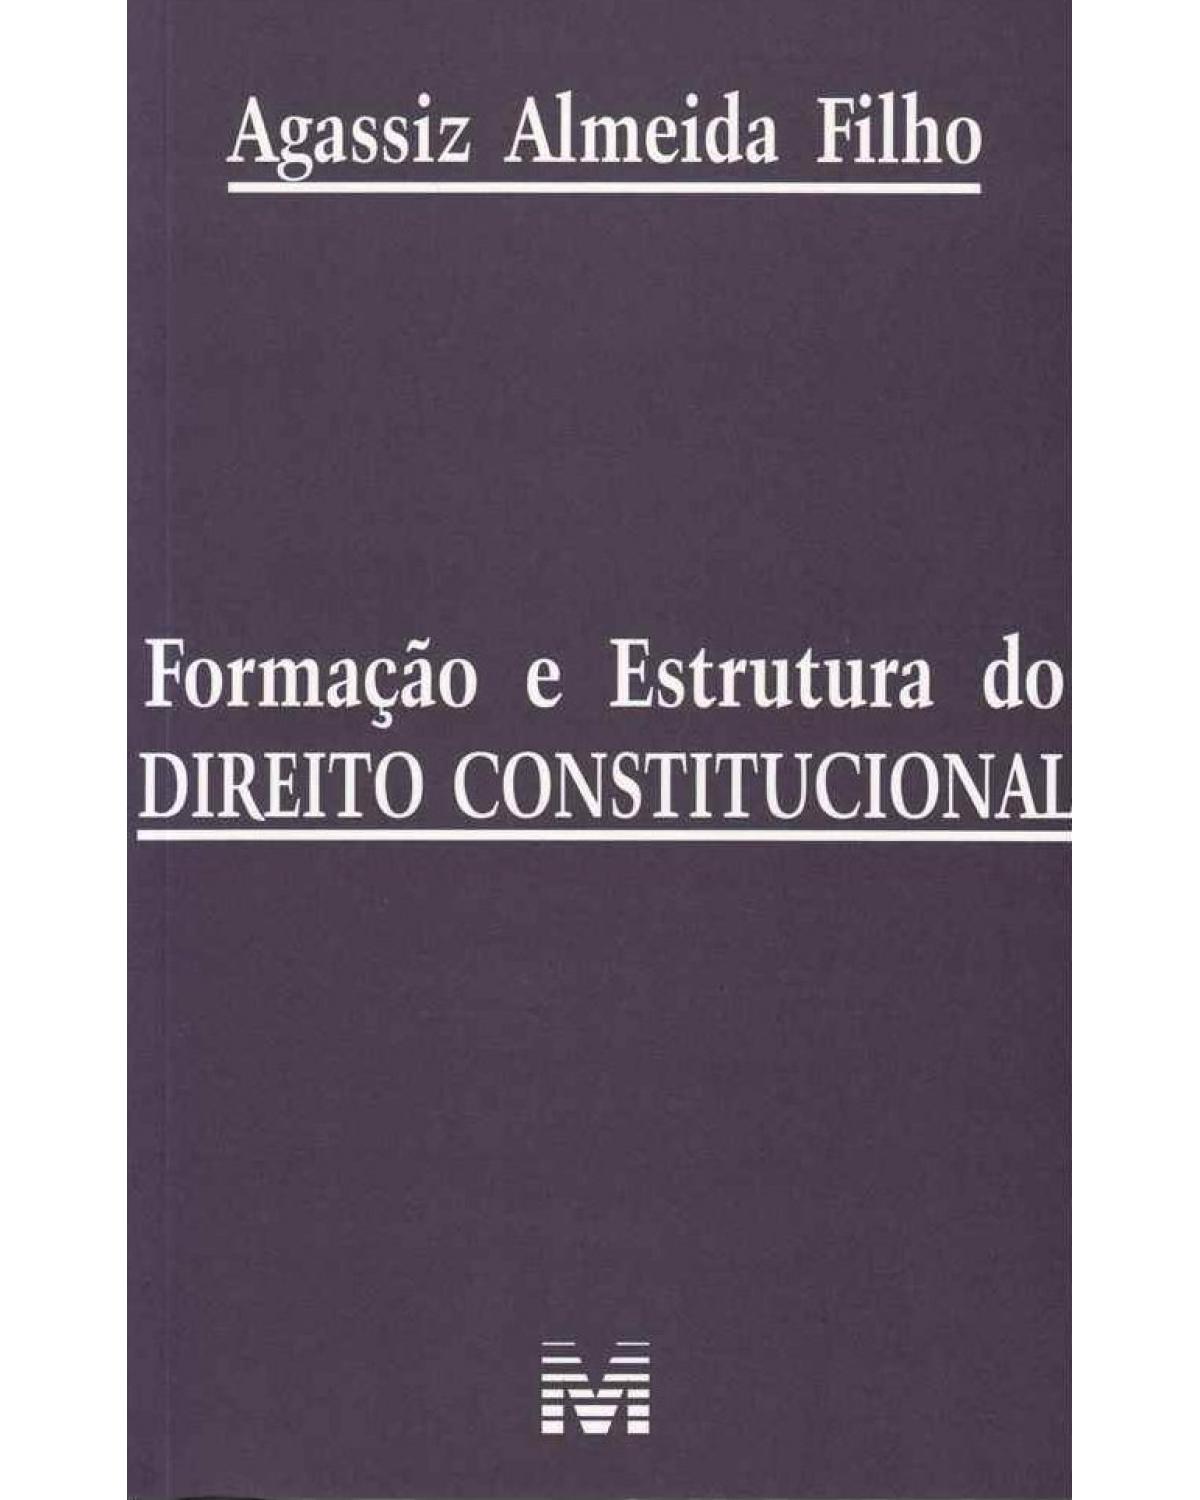 Formação e estrutura do direito constitucional - 1ª Edição